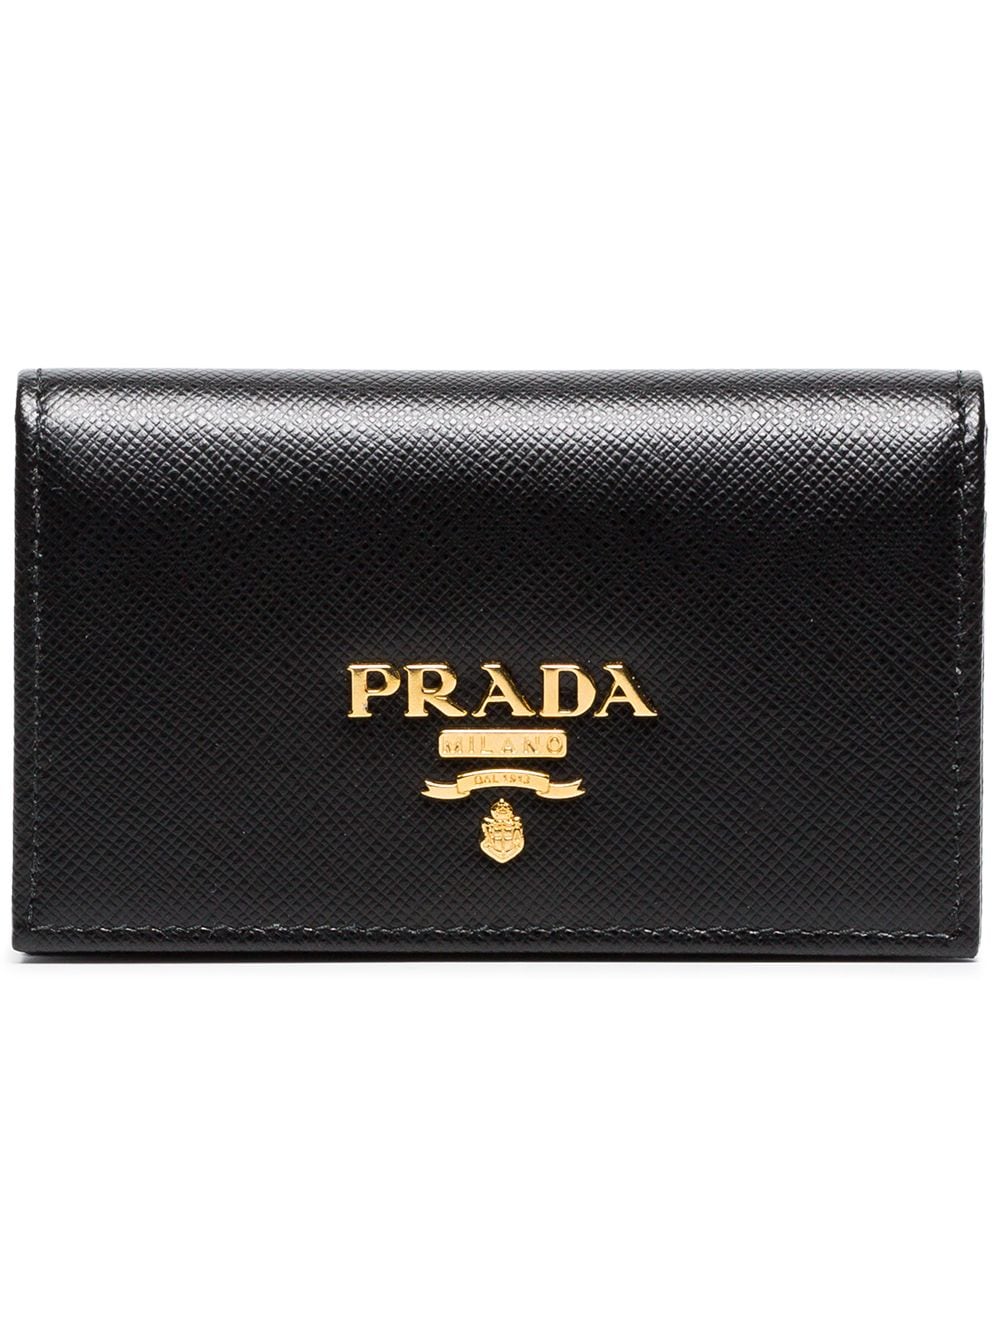 фото Prada маленький кошелек с логотипом